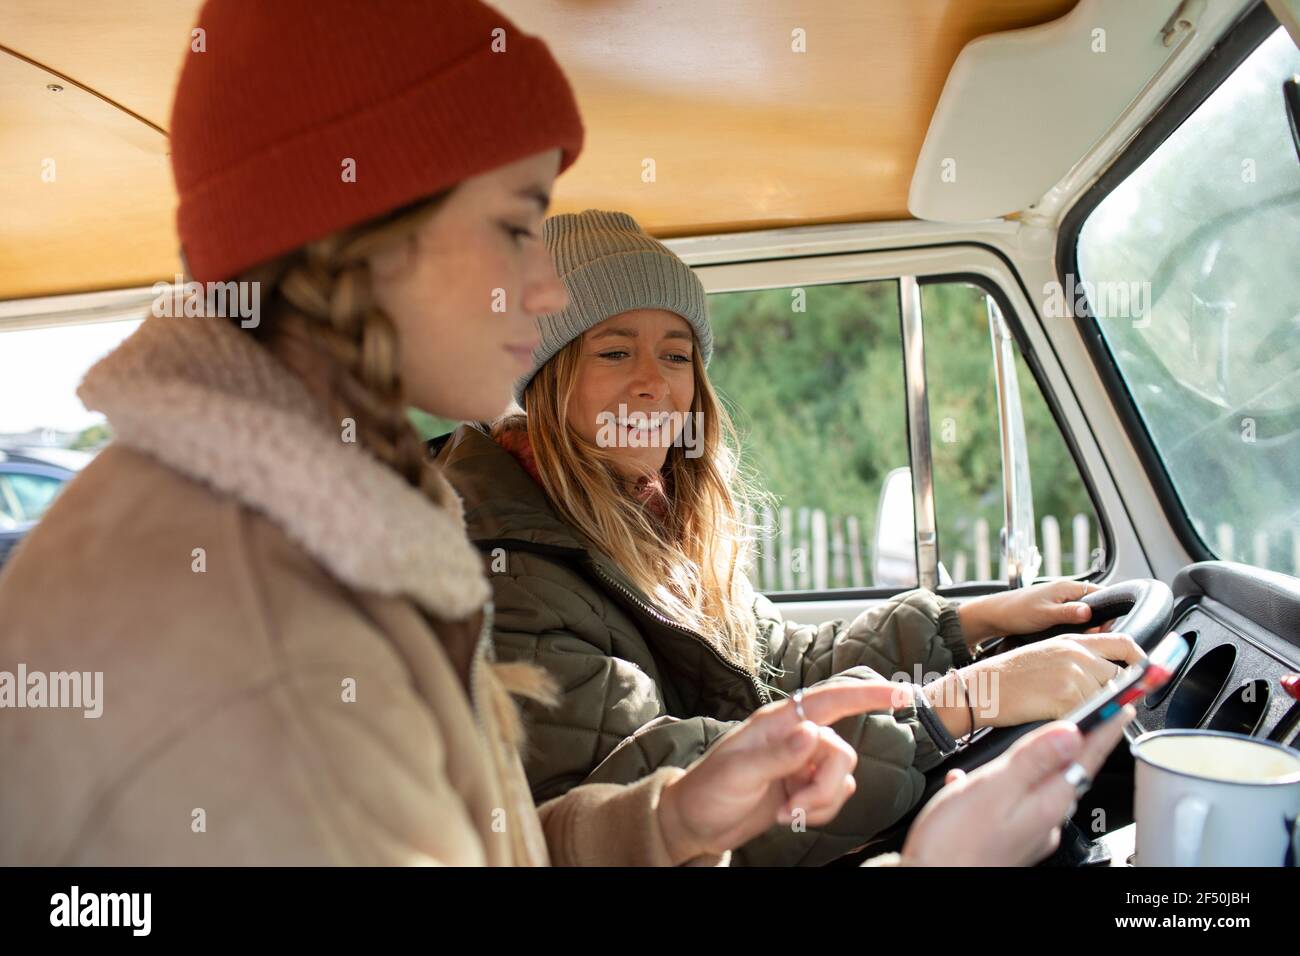 Young women friends using smart phone in van Stock Photo